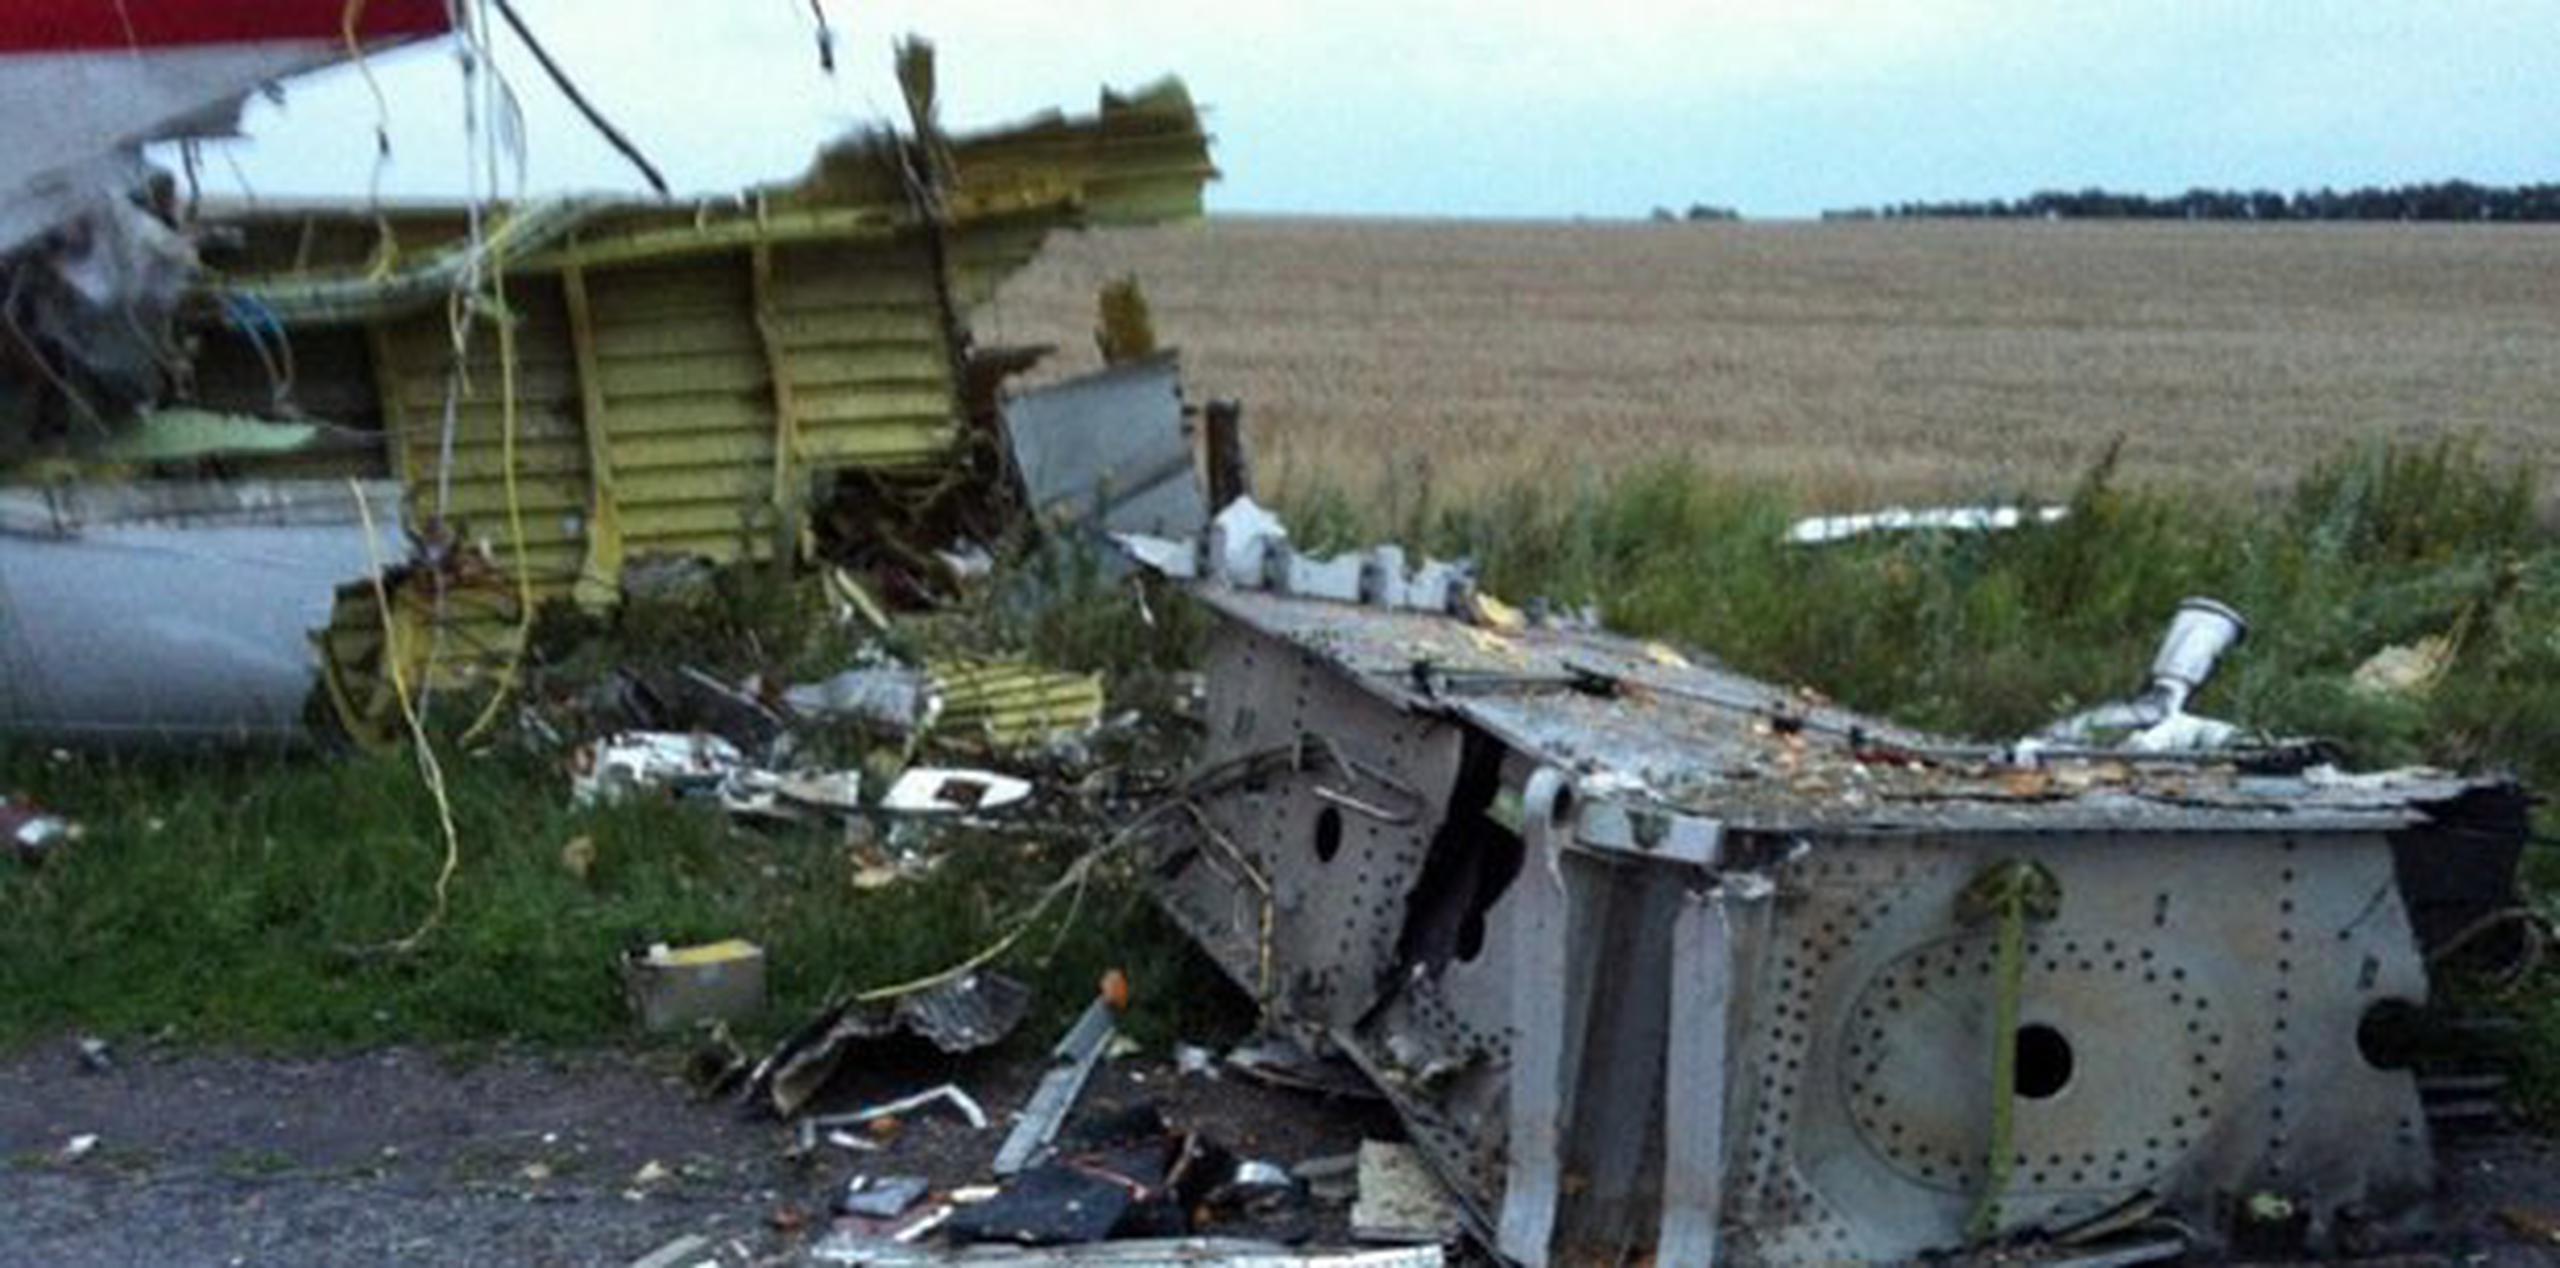 El 17 julio 2014 fallecieron los 298 ocupantes del vuelo MH17 de Malaysia Airlines, derribado por un misil en la zona de conflicto en el este de Ucrania. (Archivo)